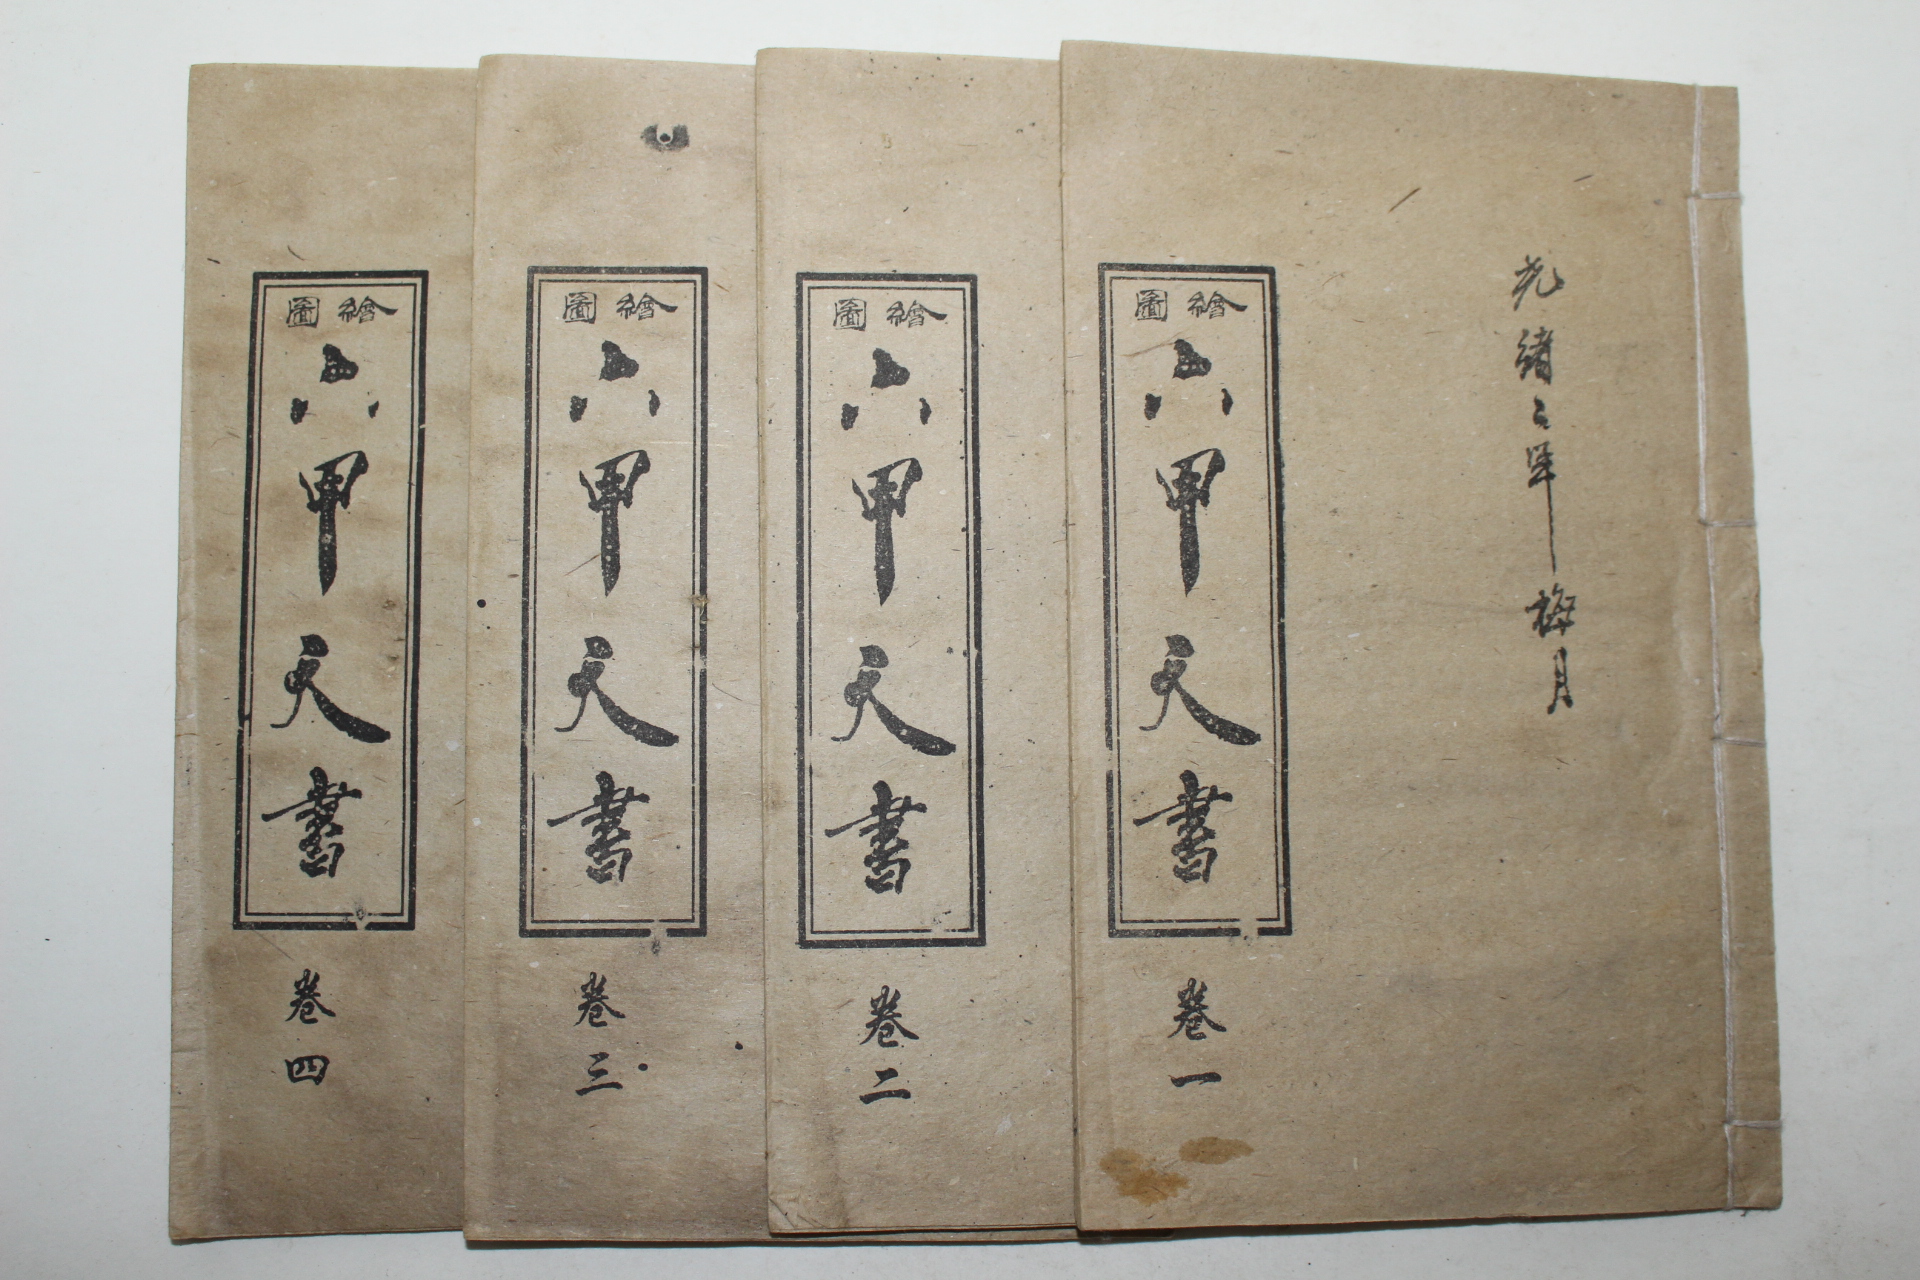 중국상해본 회도육갑천서(繪圖六甲天書) 4책완질